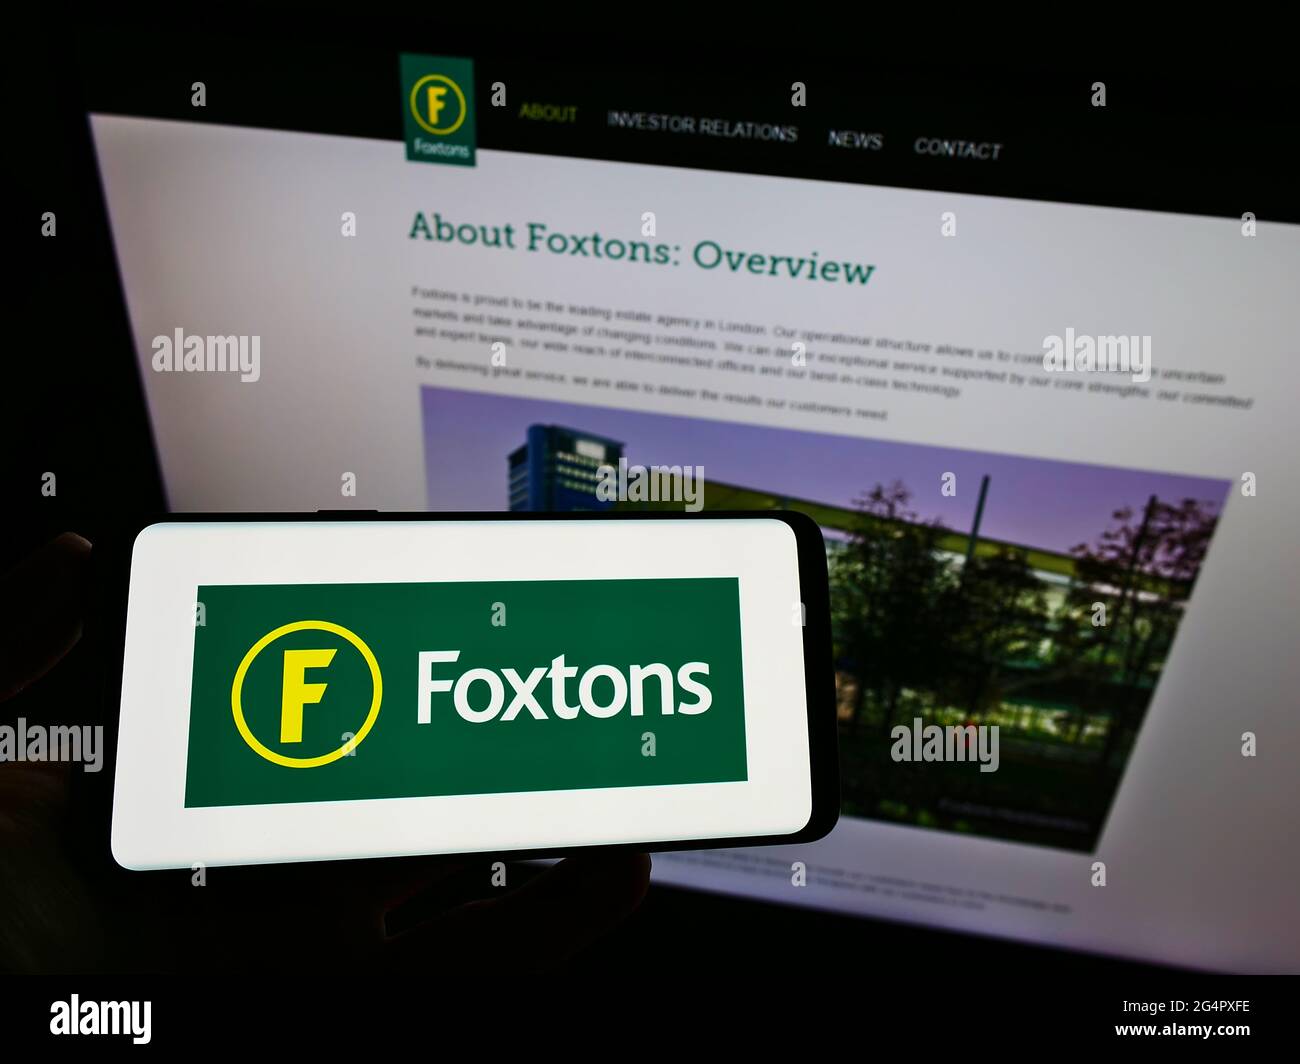 Persona in possesso di smartphone con logo dell'agenzia immobiliare britannica Foxtons Group plc sullo schermo di fronte al sito web. Mettere a fuoco il display del telefono. Foto Stock